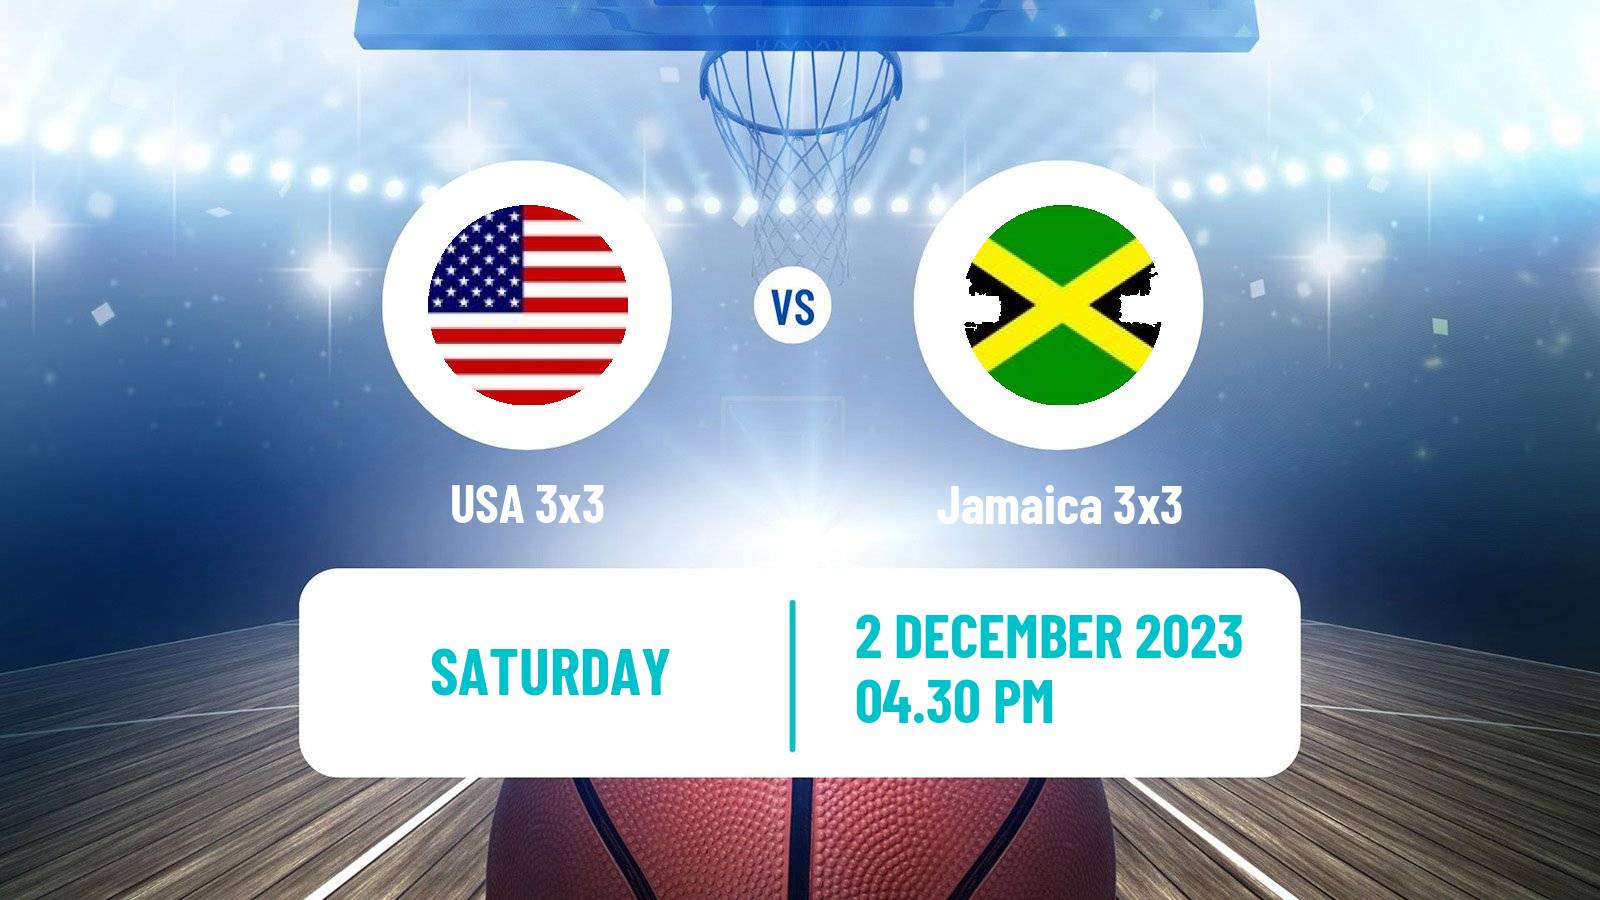 Basketball Americup 3x3 USA 3x3 - Jamaica 3x3